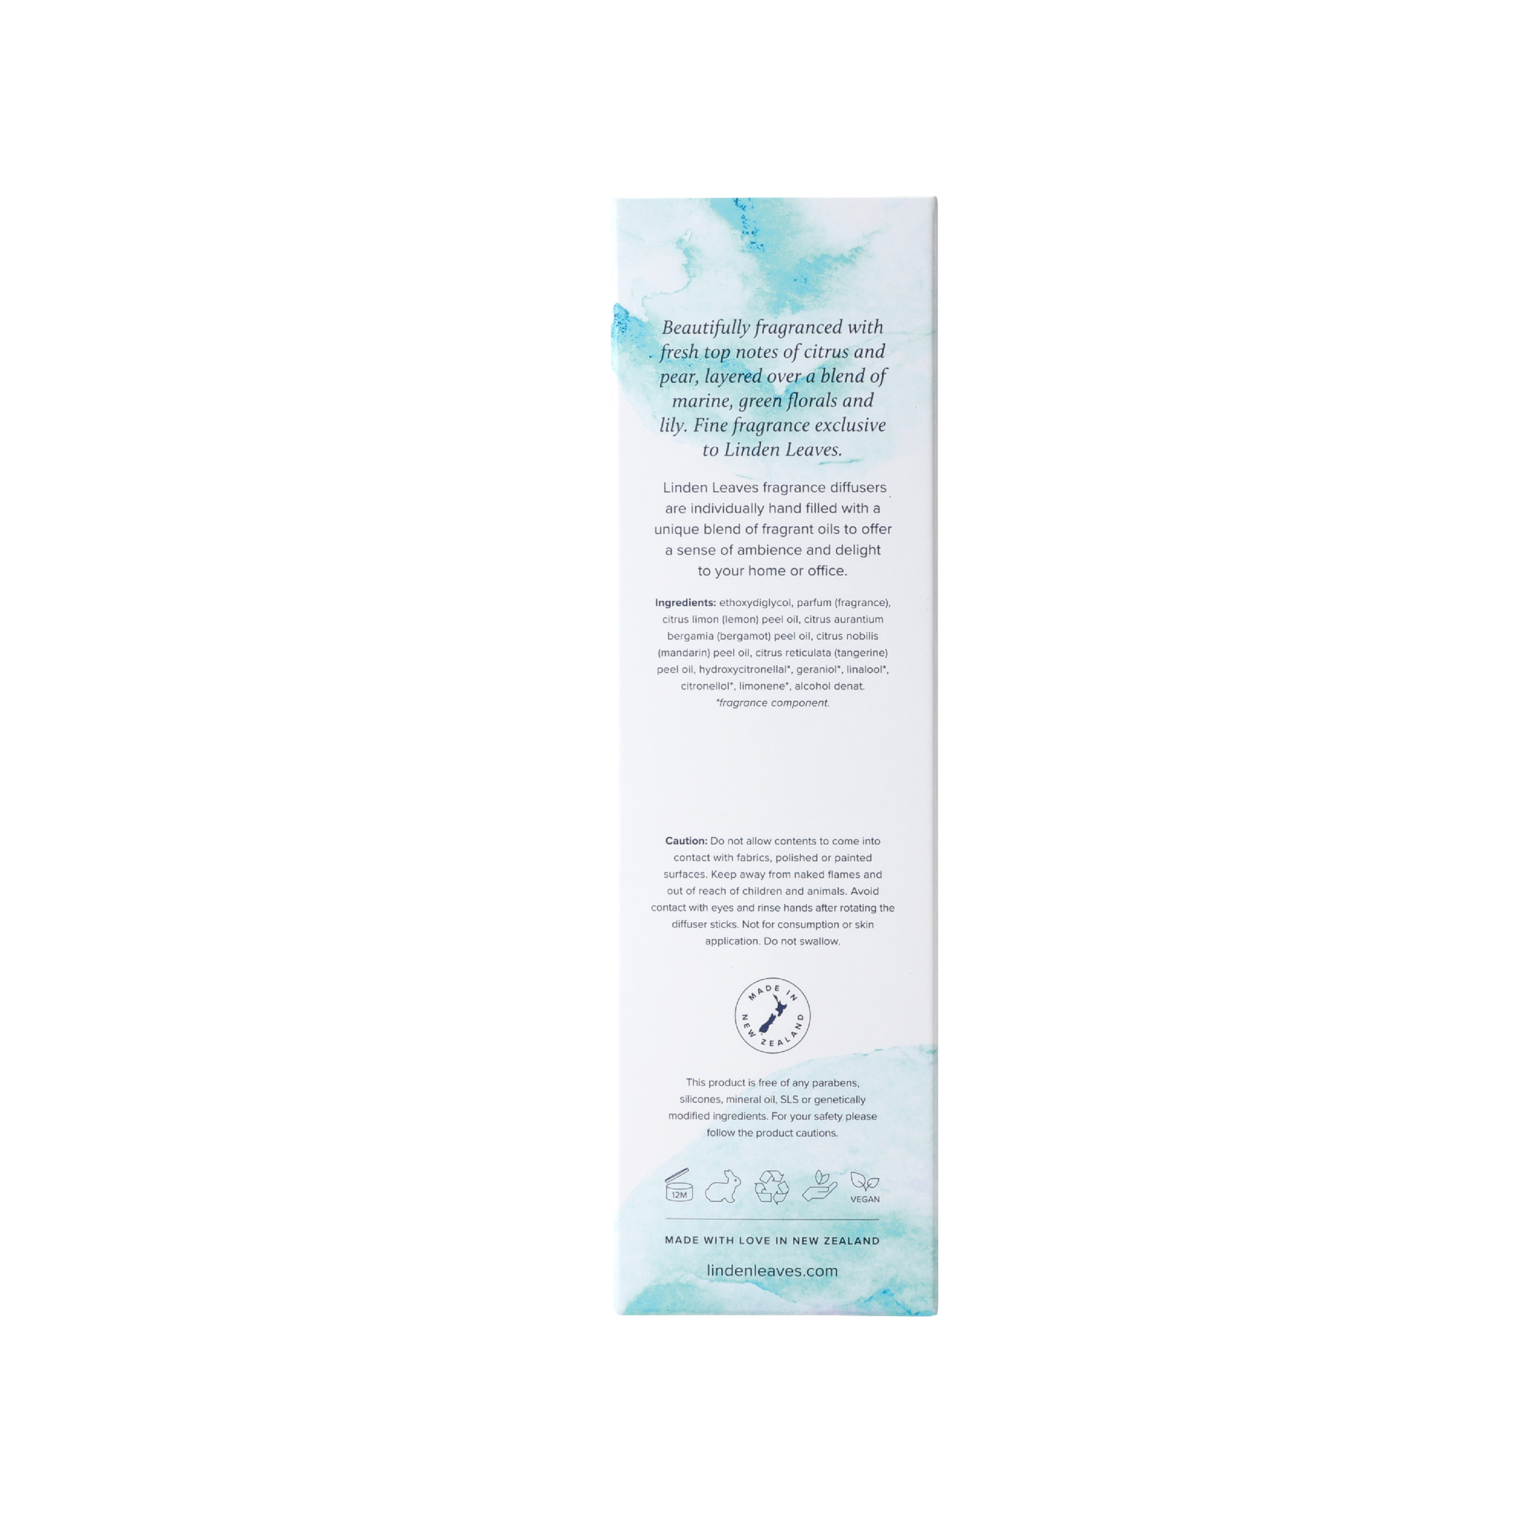 Aqua Lily Midi Fragrance Diffuser 50ml